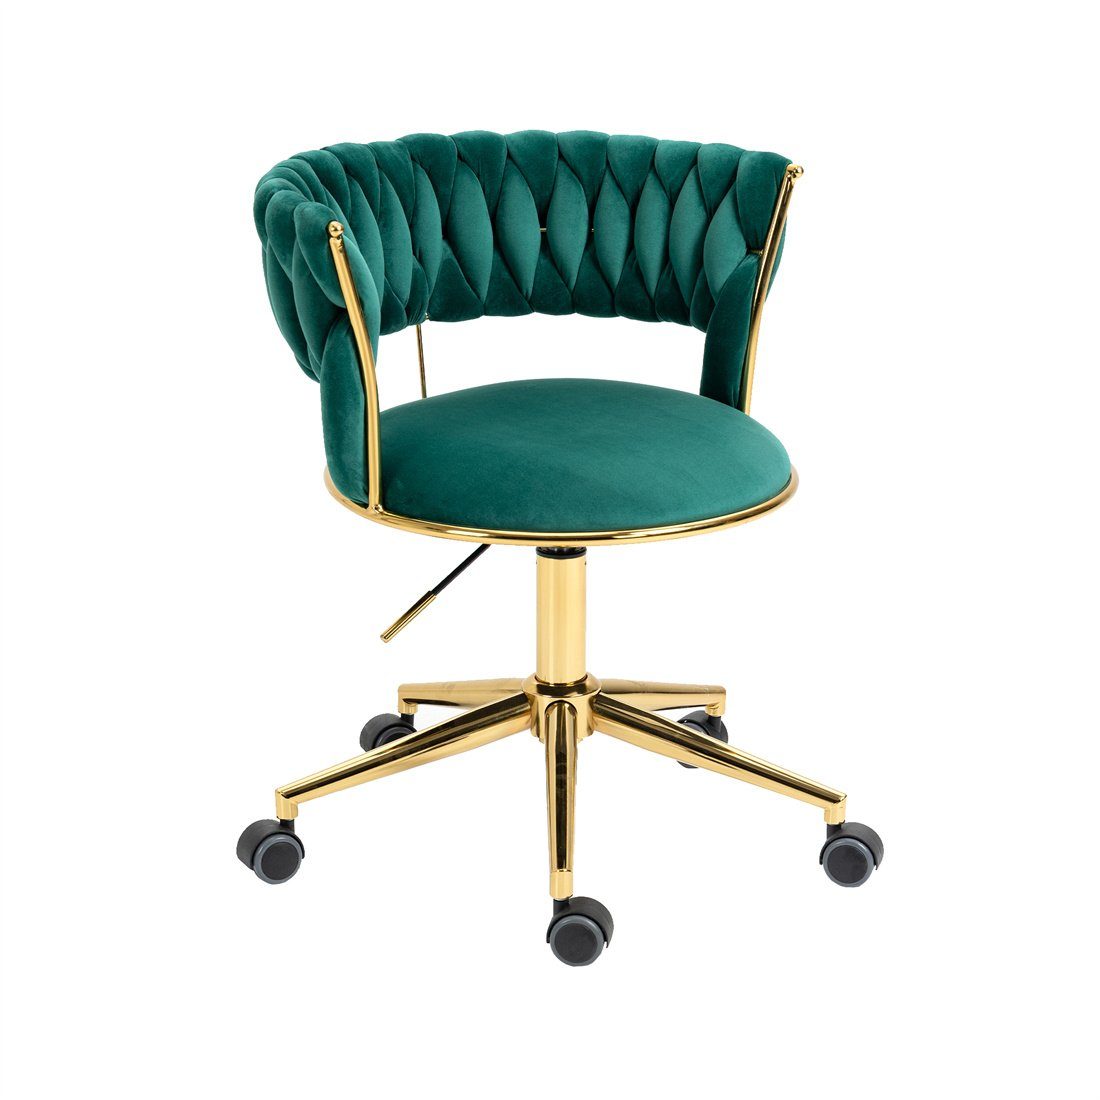 Home Chair,Kosmetikstuhl,Verstellbarer Computerstuhl,grün DÖRÖY Drehstuhl Office